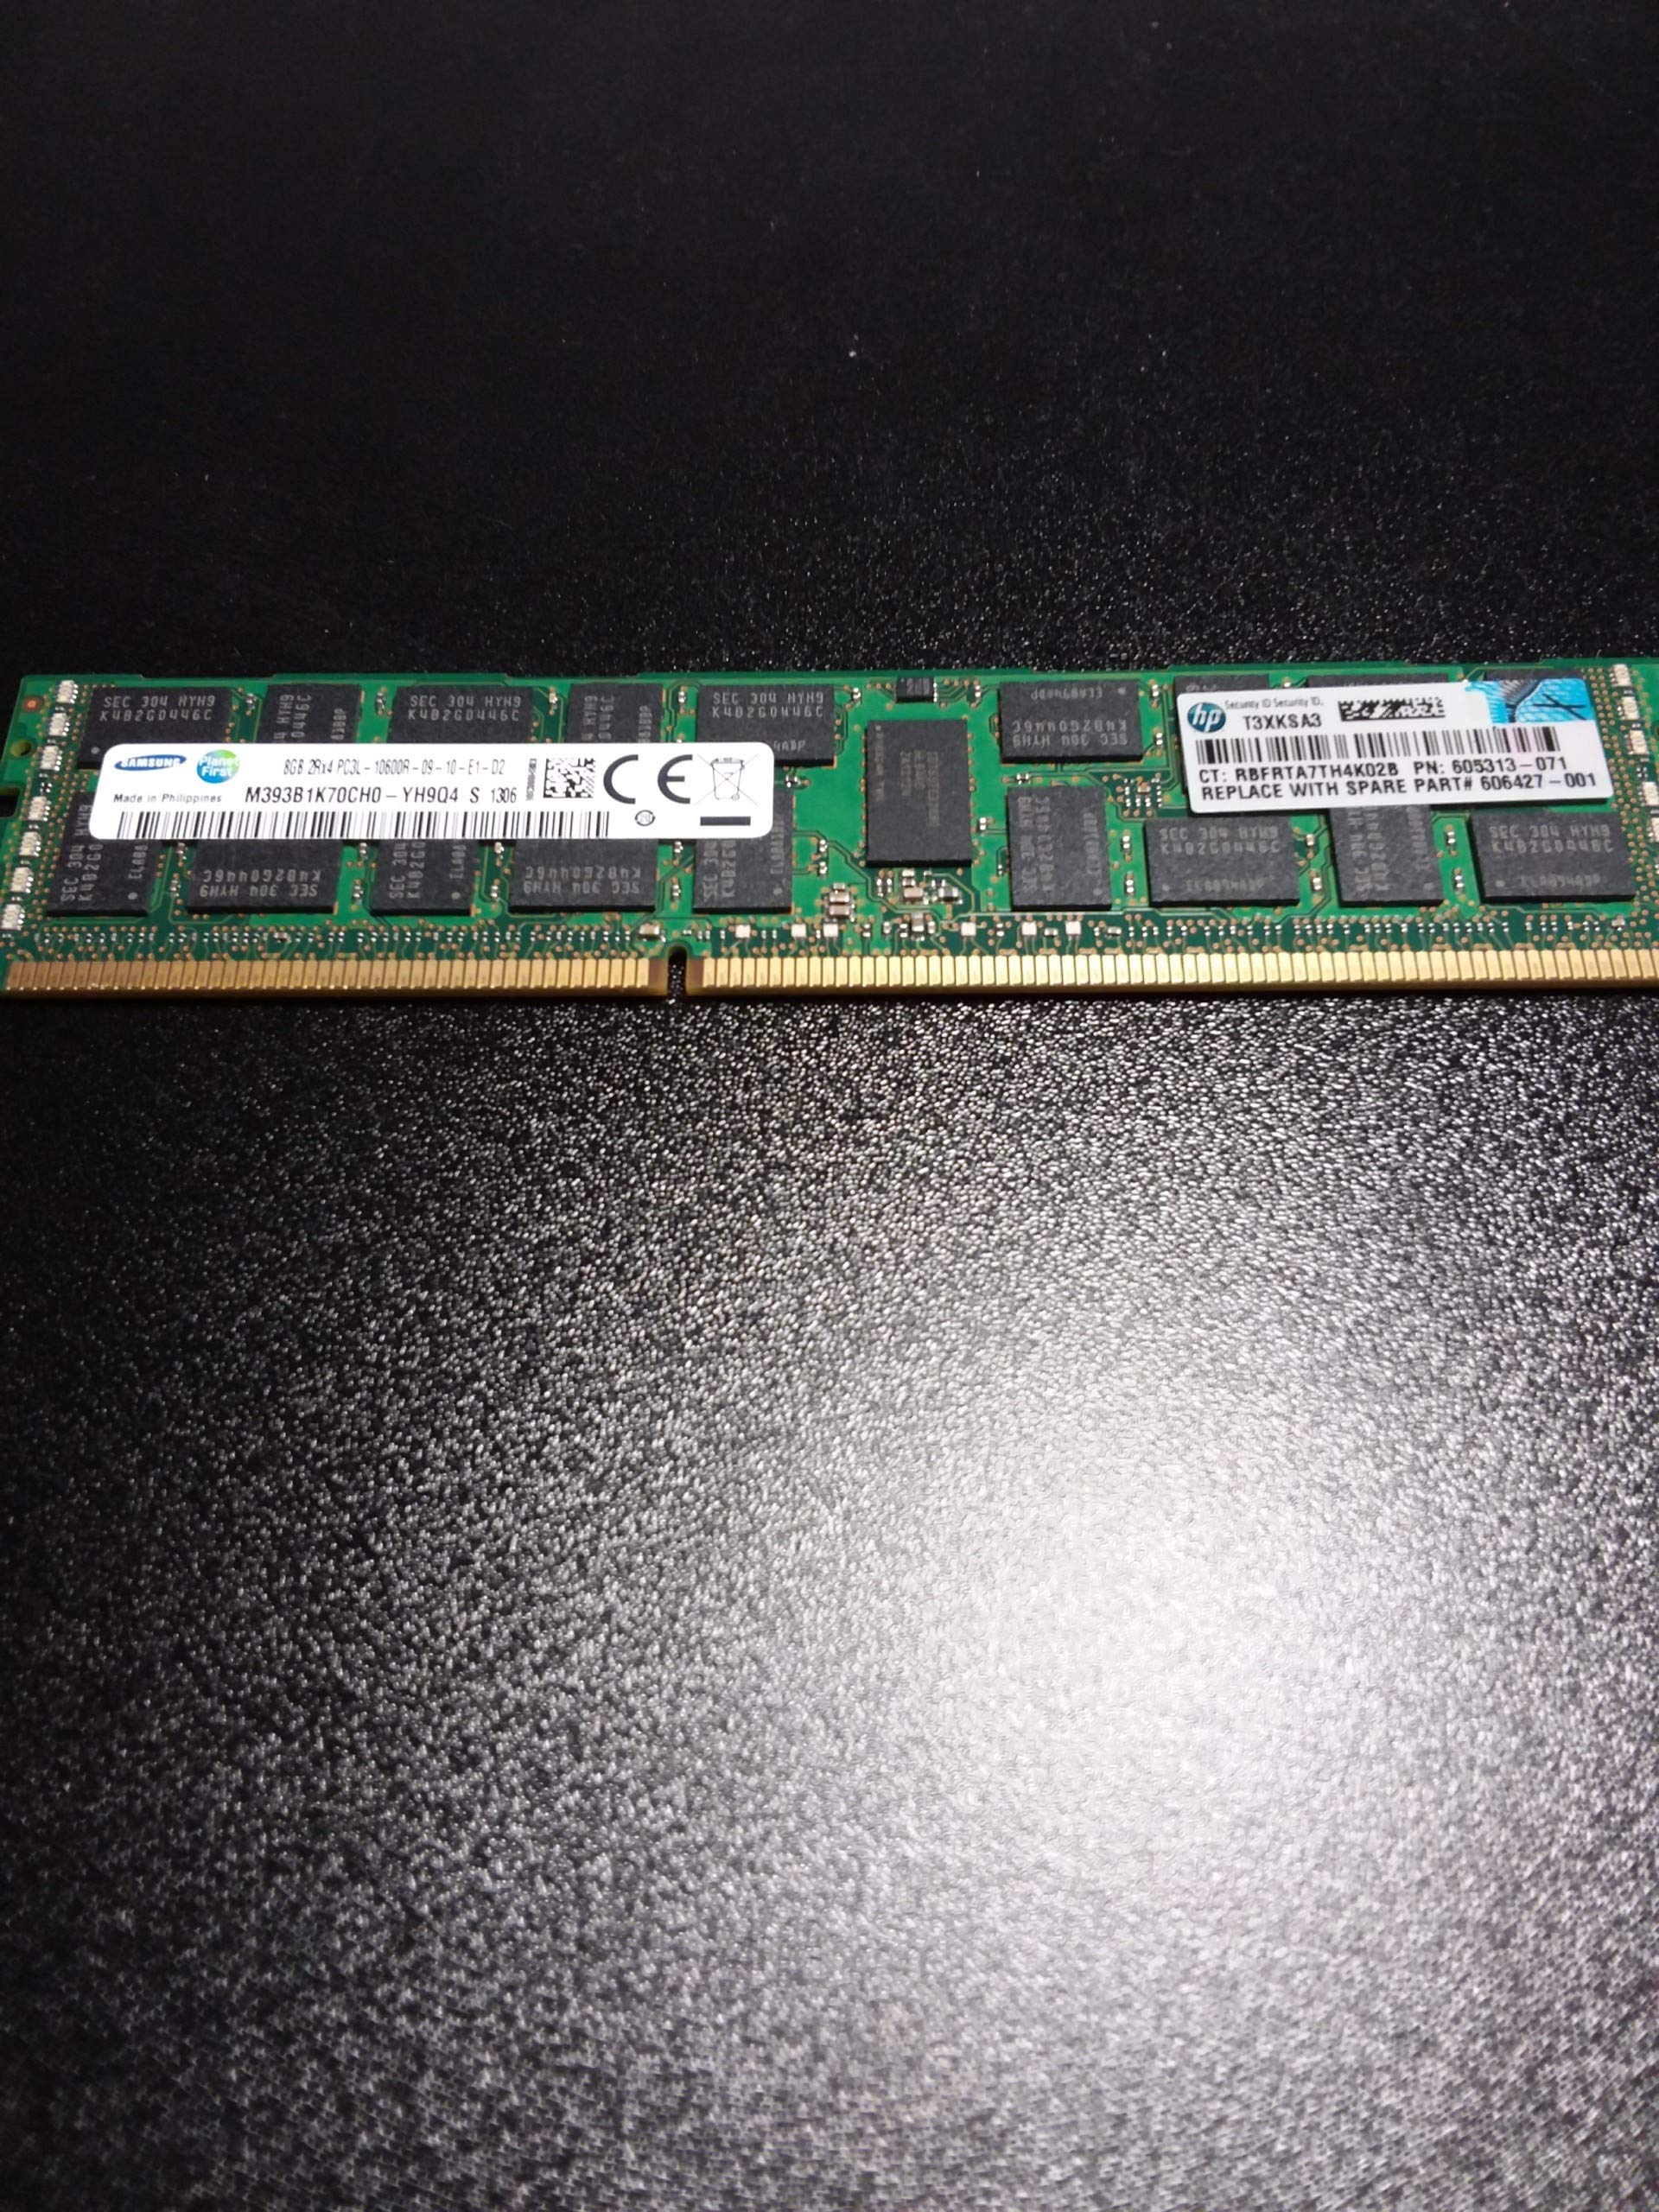 Samsung 8GB DDR3 SDRAM サーバーメモリーモジュール - 8 GB - DDR3 SDRAM - 1333 MHz DDR3-1333PC3-10600R - ECC - Re